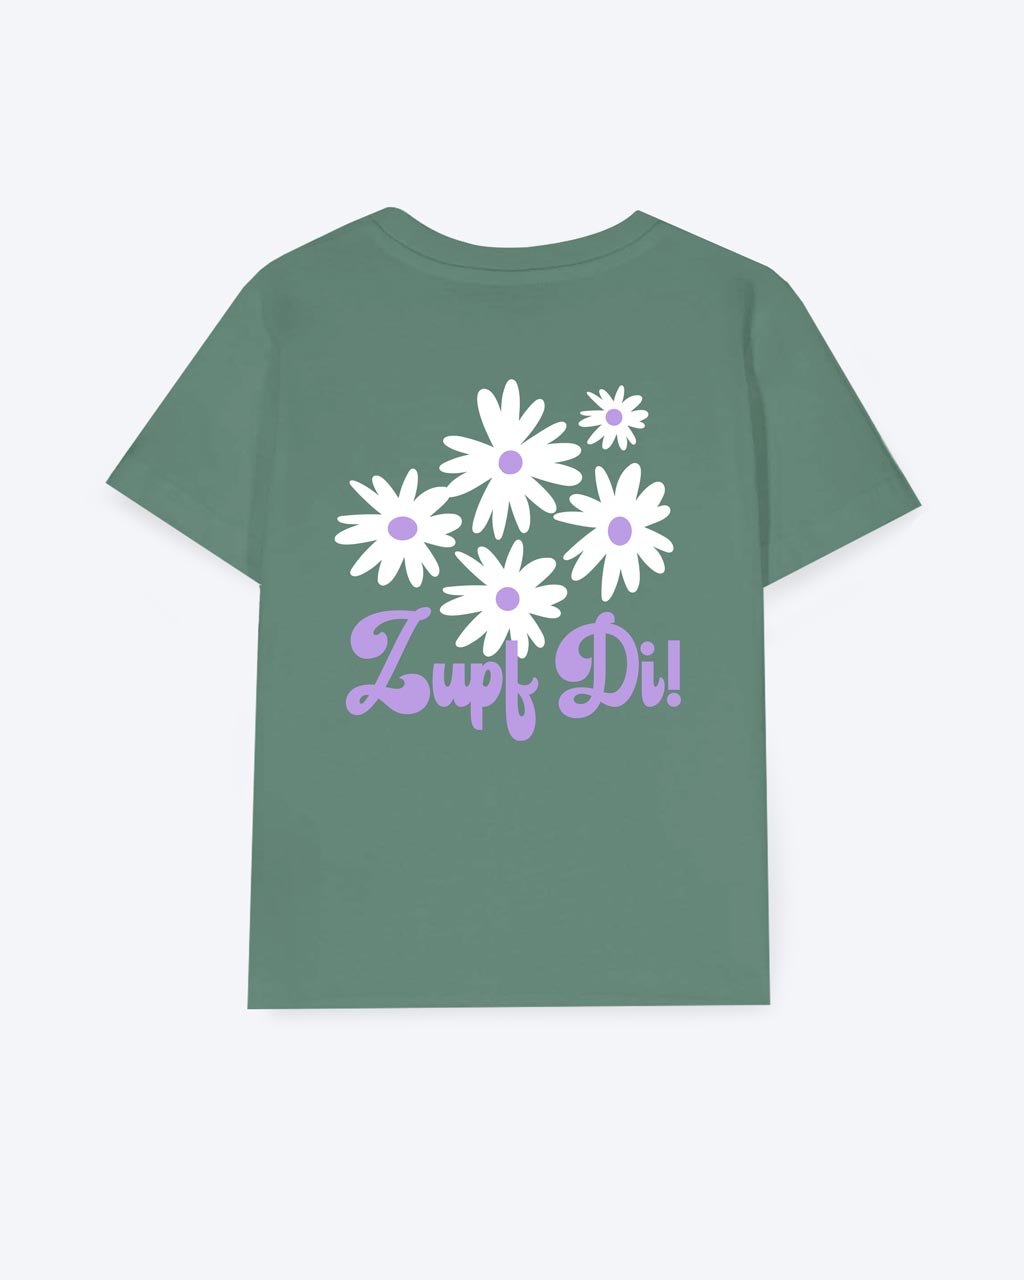 Ein grünes T-Shirt mit einem weißen Blumenmotiv und darunter steht in lila "Zupf Di!" als Schriftzug.